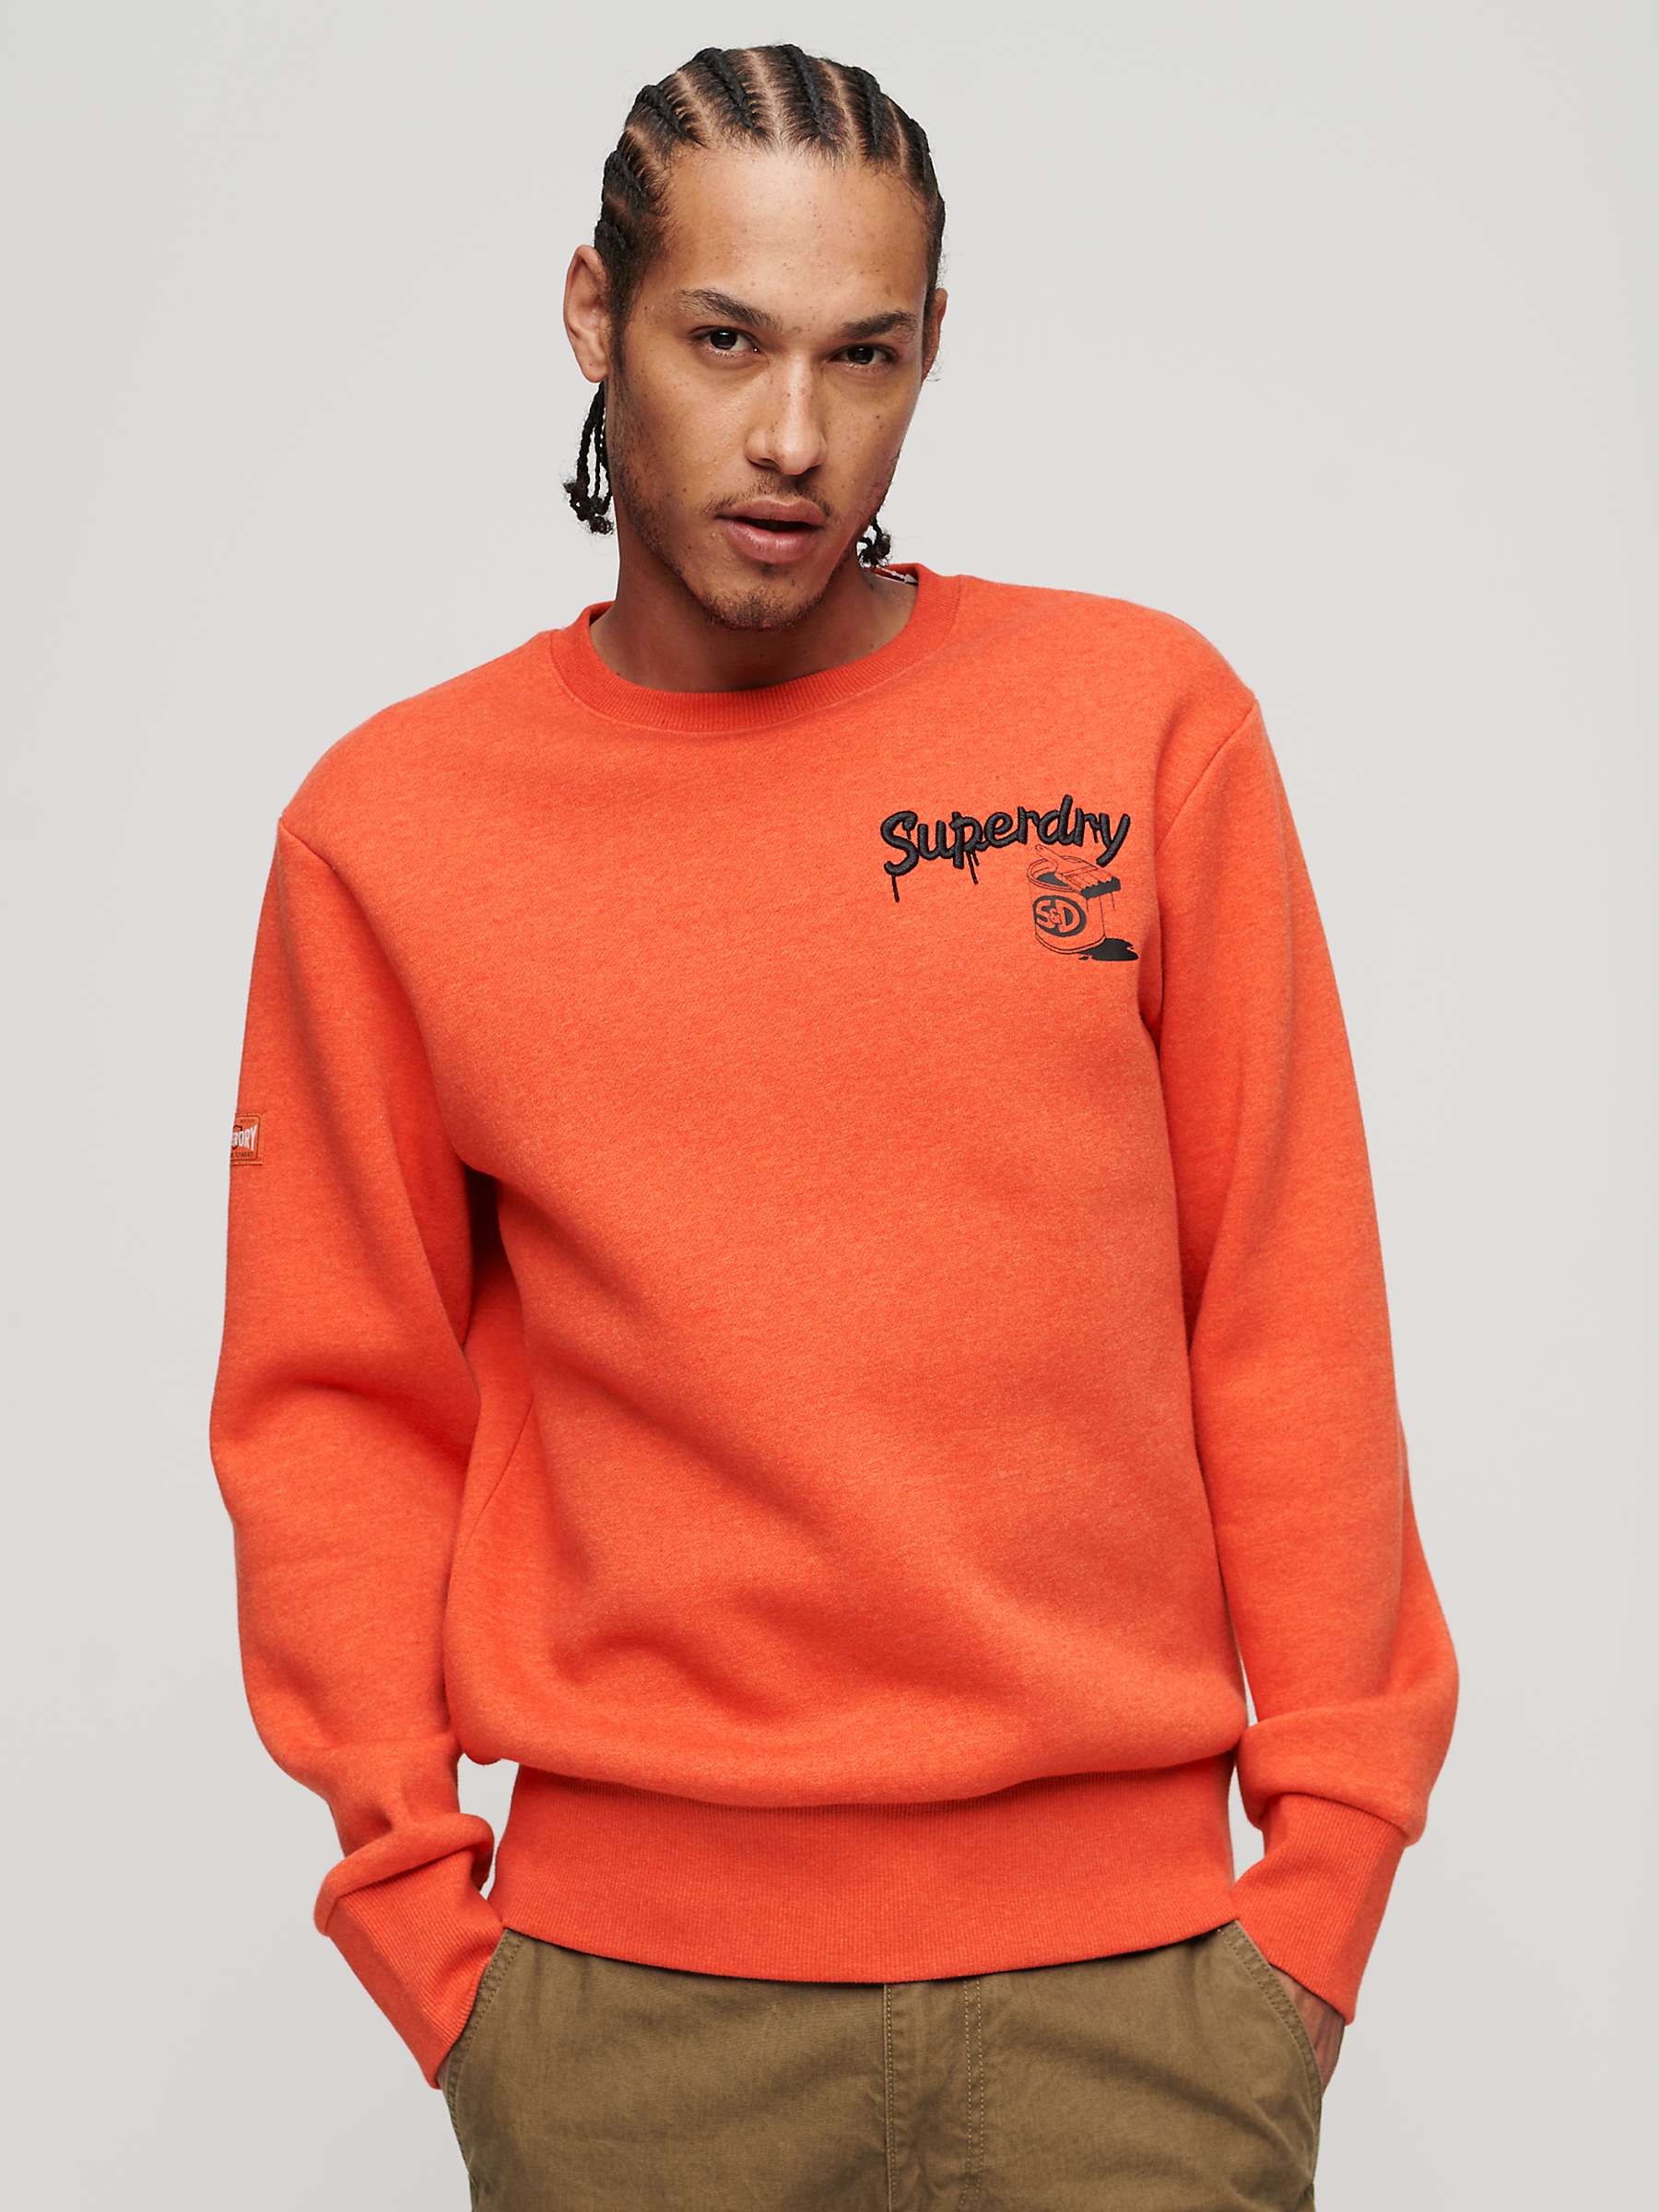 Buy Superdry Workwear Trade Jumper, Orange Online at johnlewis.com